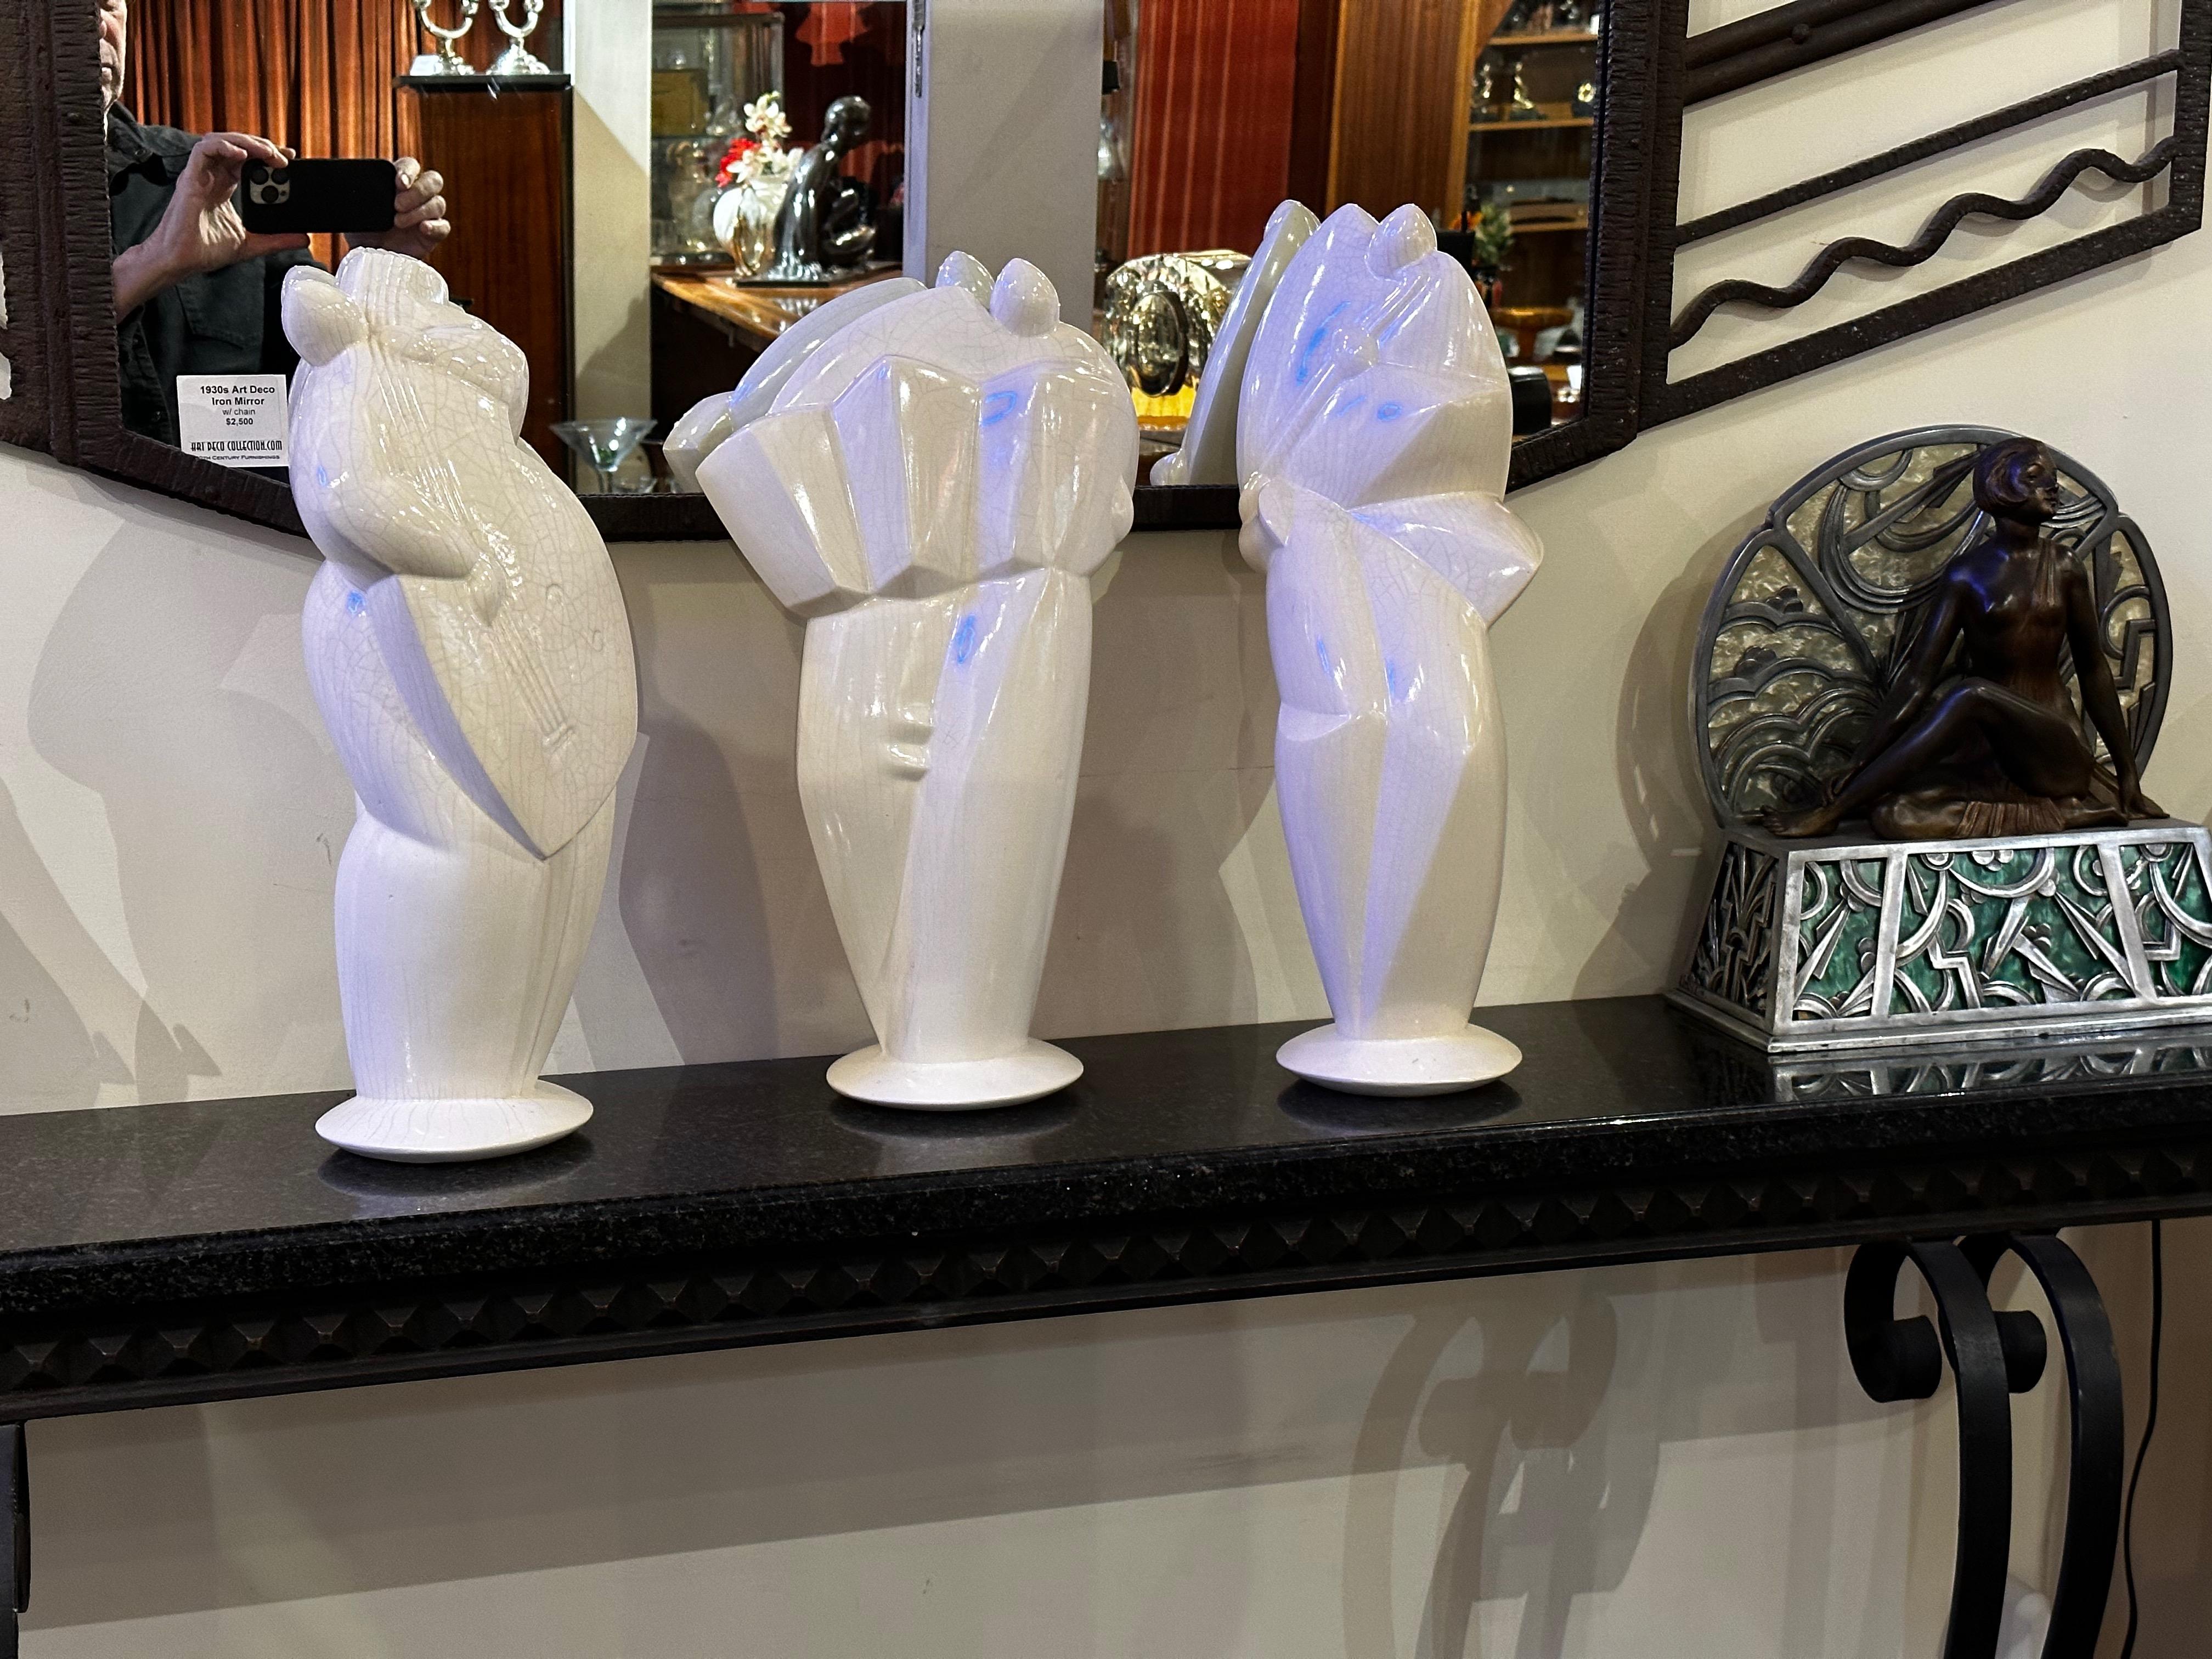 Drei kubistische Musikerskulpturen im Art-Déco-Stil aus Keramik. Diese großen Statuen sind in einer französischen Technik namens Craquele (Craquelé) gefertigt. Sie sind signiert und nummeriert 